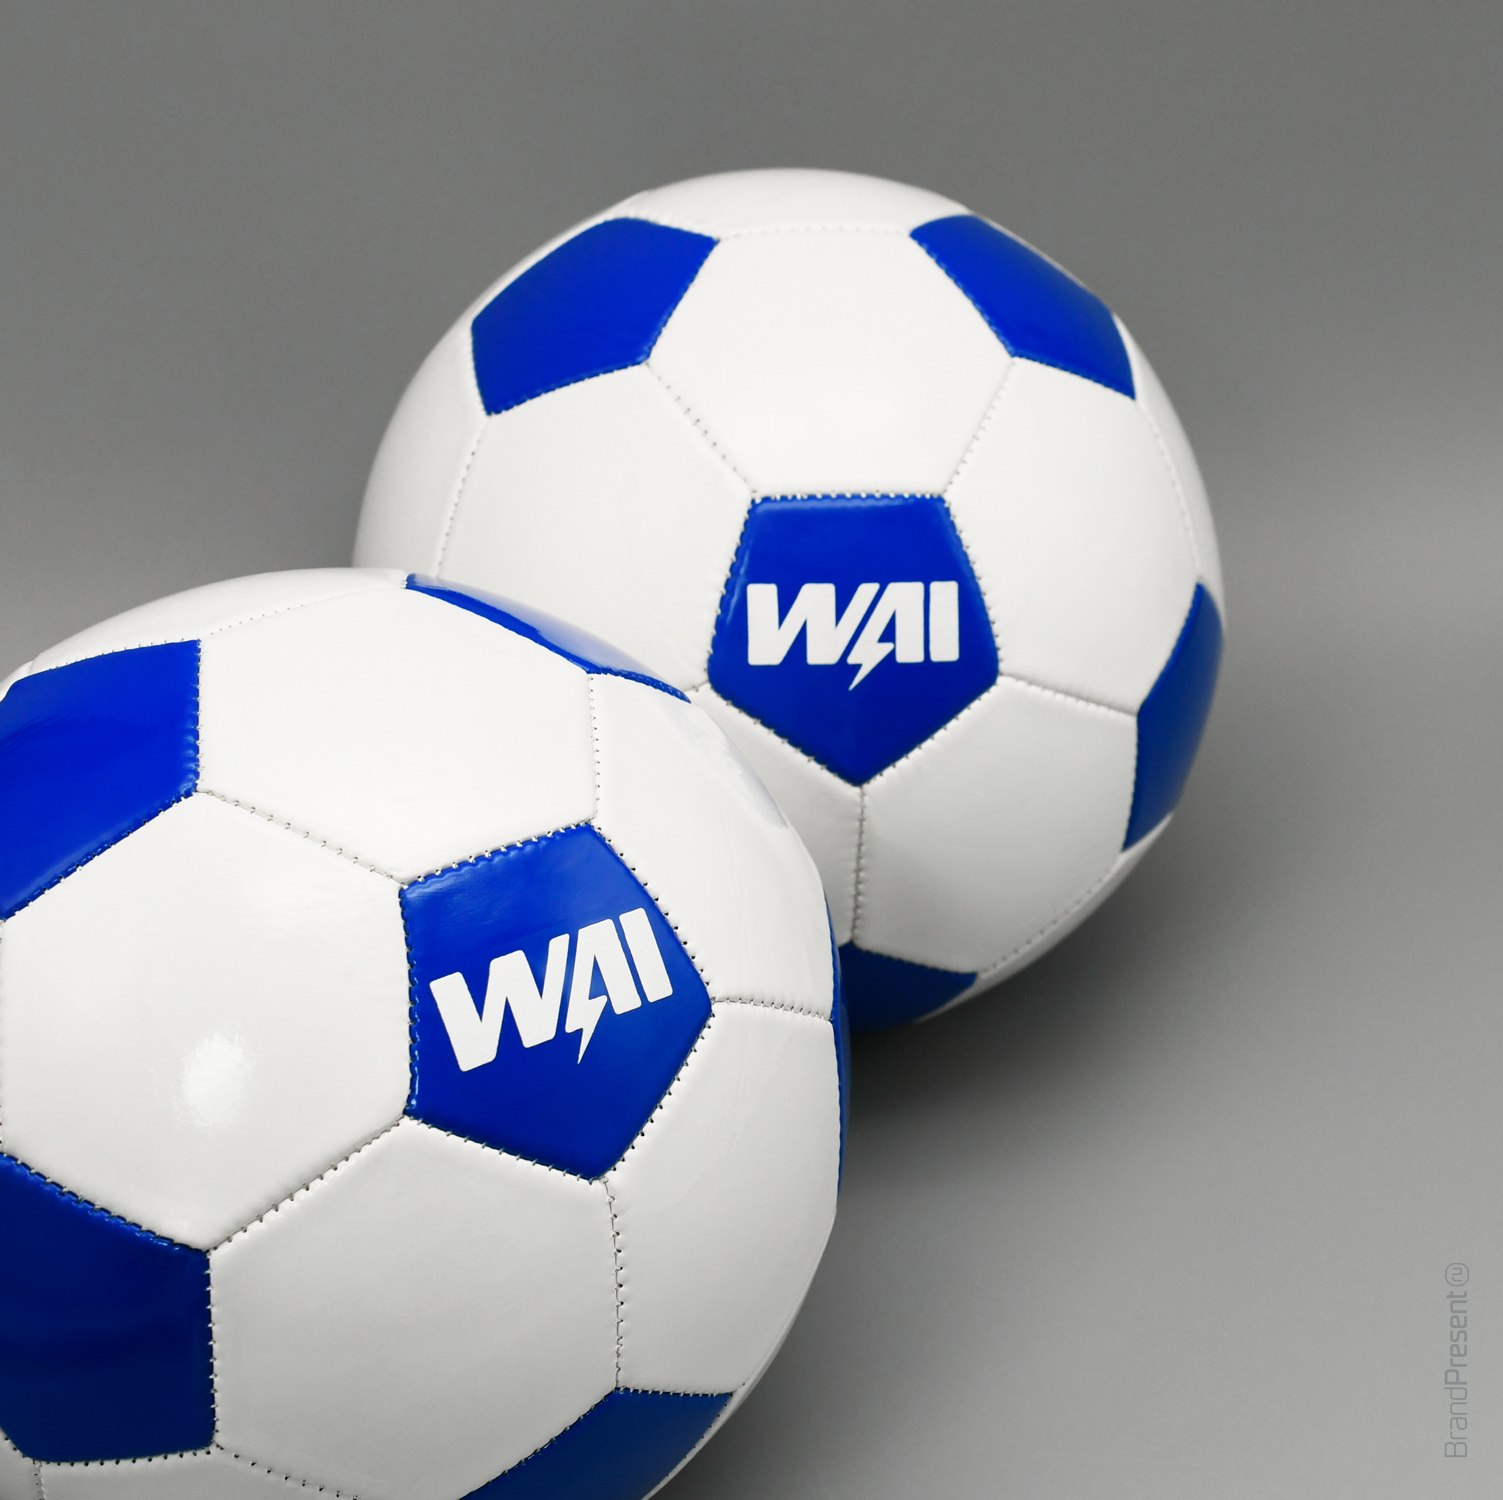 Мячи и шейкеры для WAI (Фотография 1)